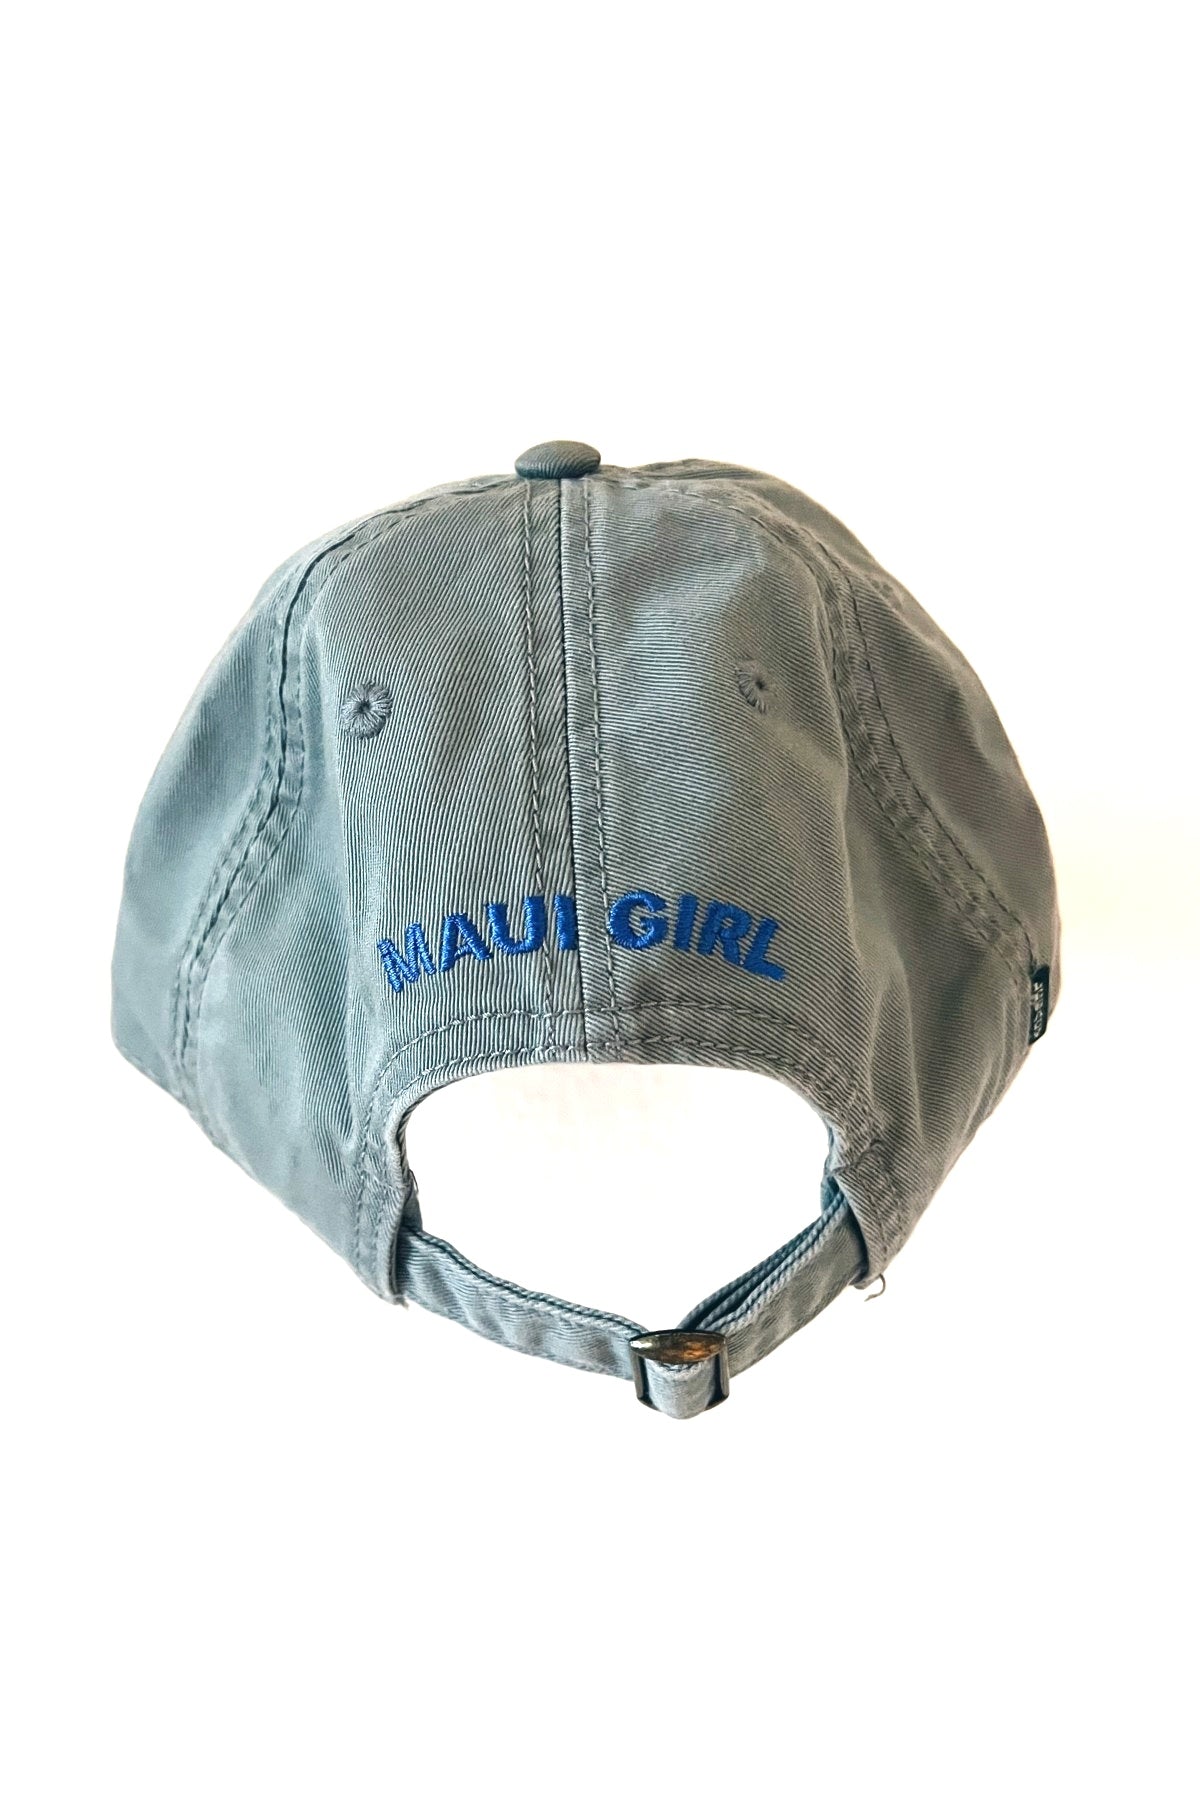 Maui Girl Rainbow Hat